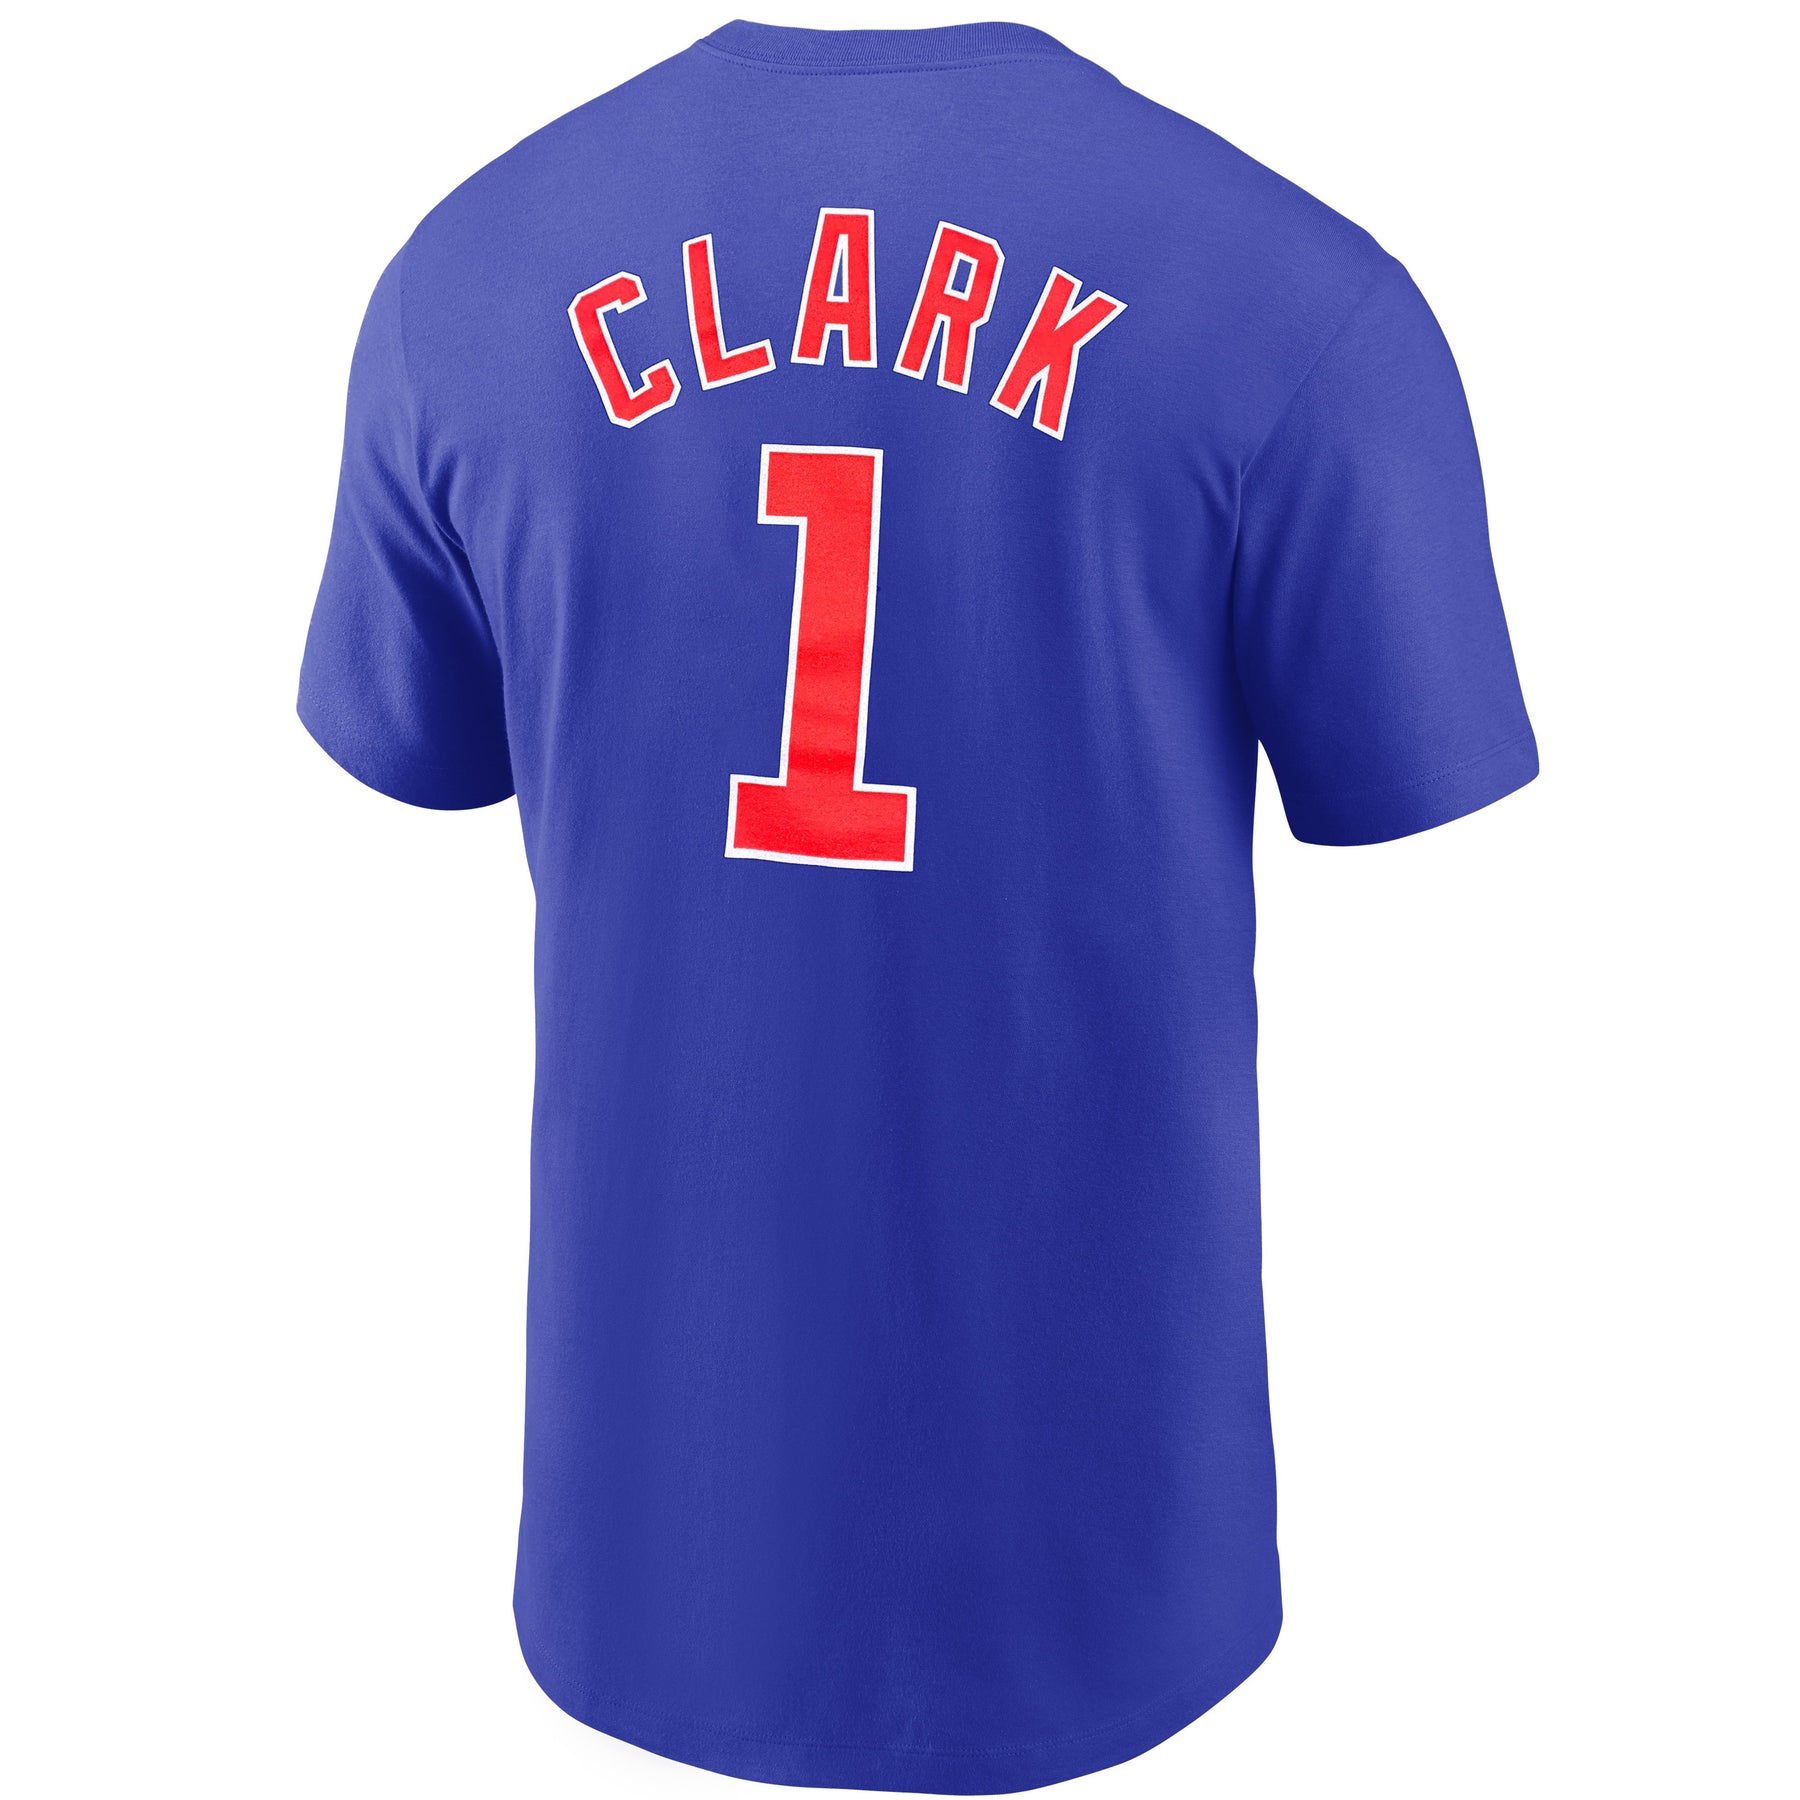 Chicago Cubs Mascot Clark Shirt